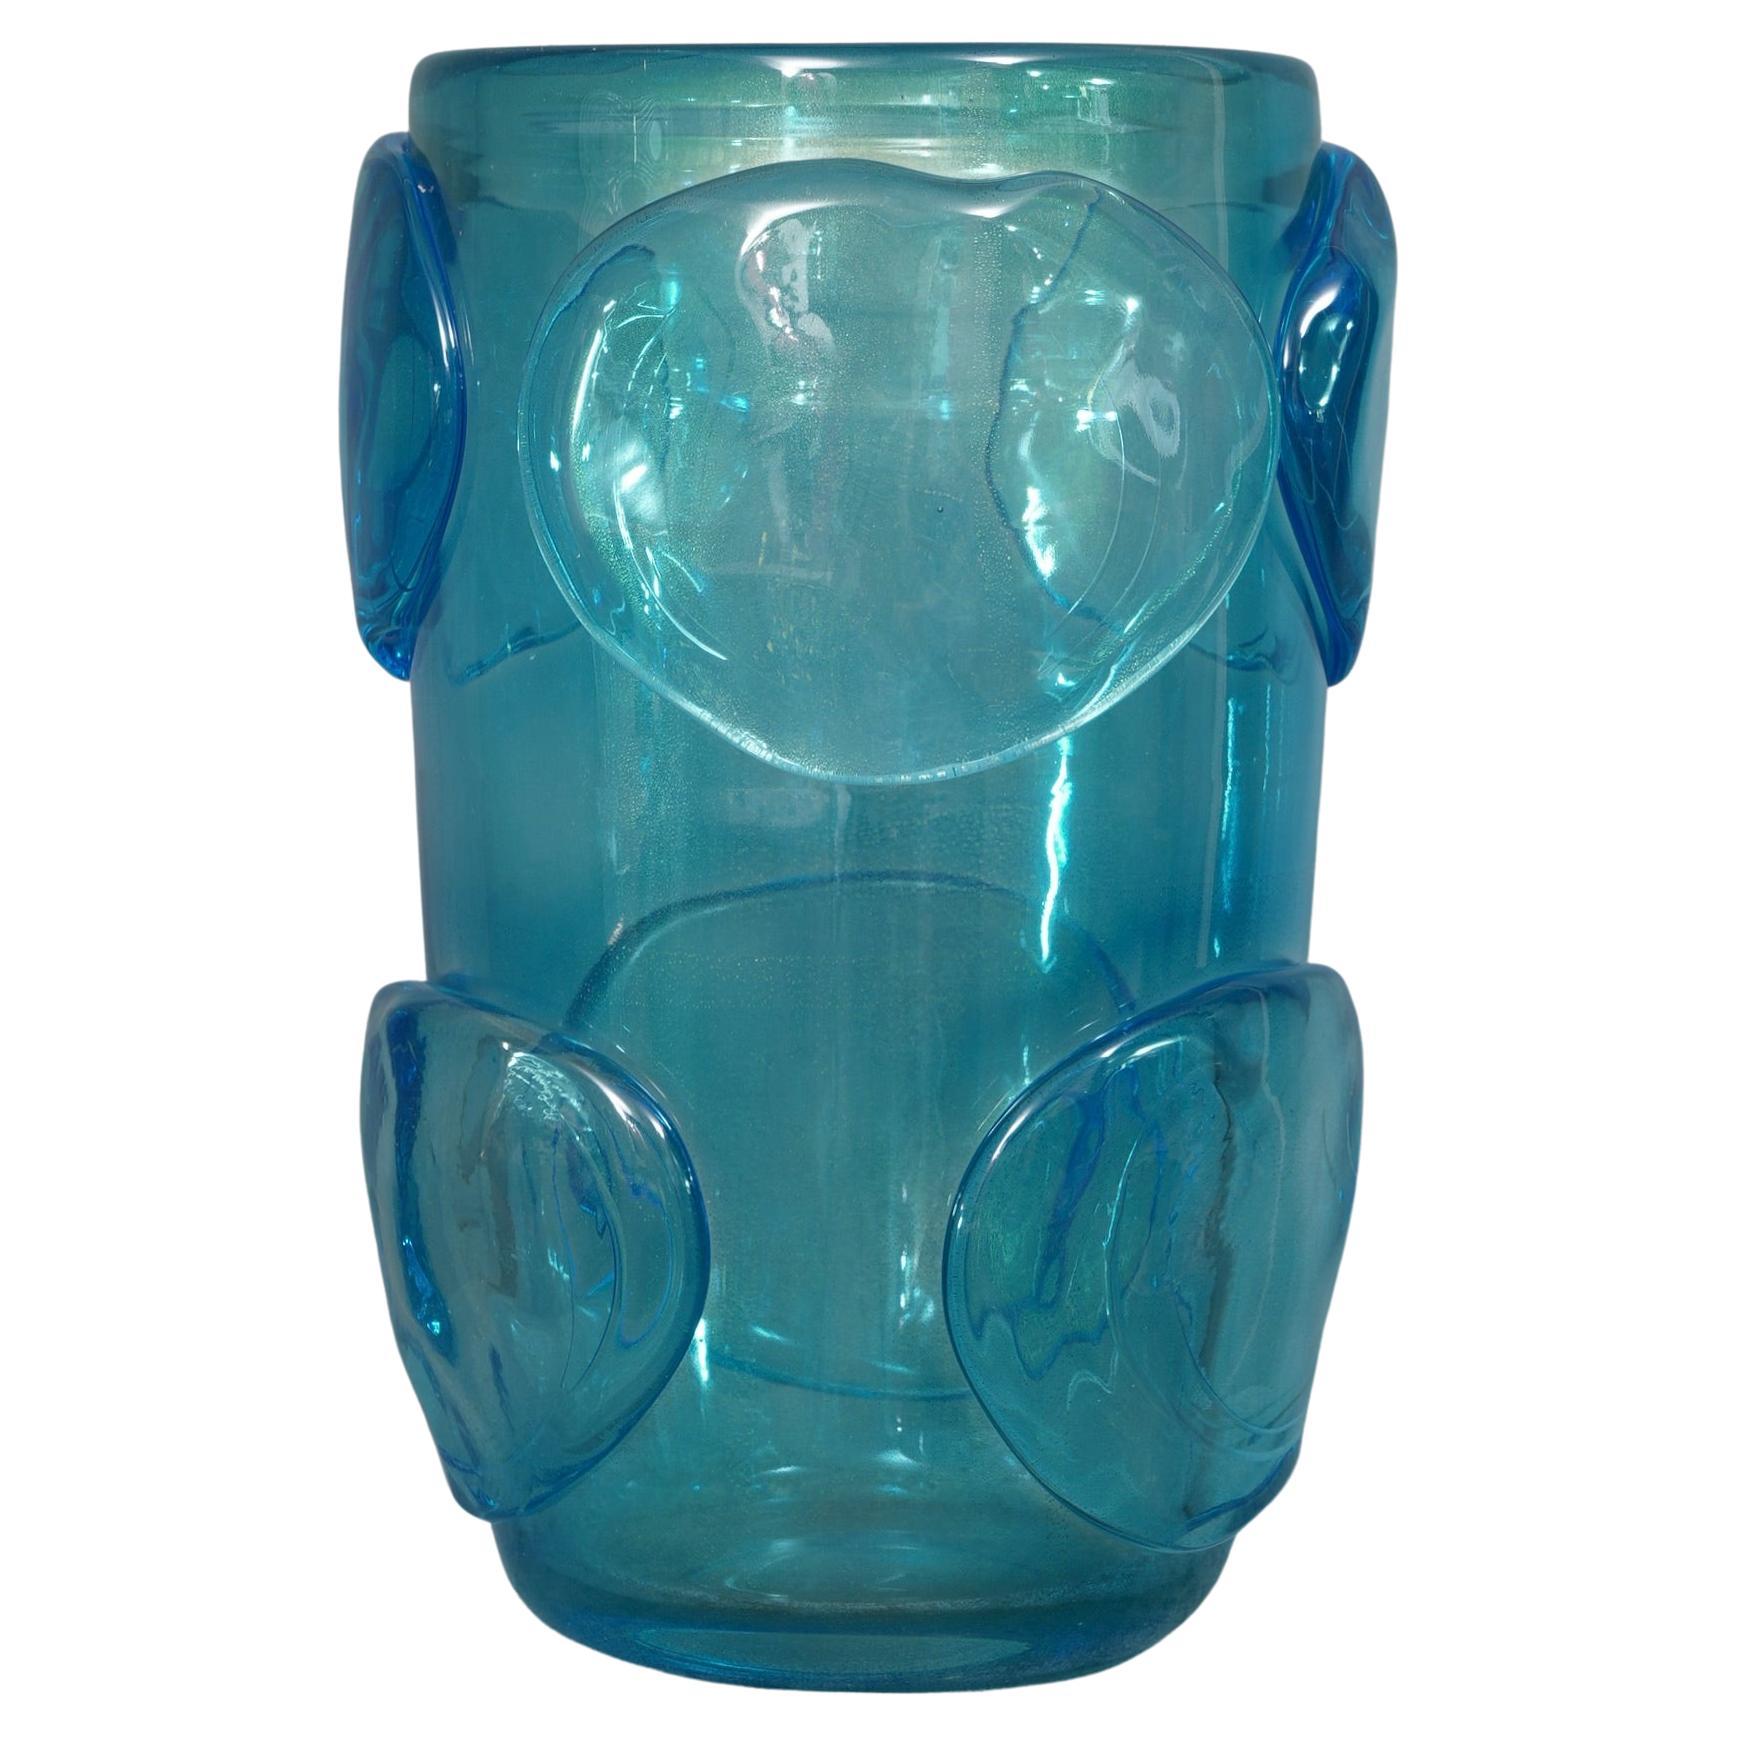 Murano Blown Glass Italian Midcentury Vase, 1950